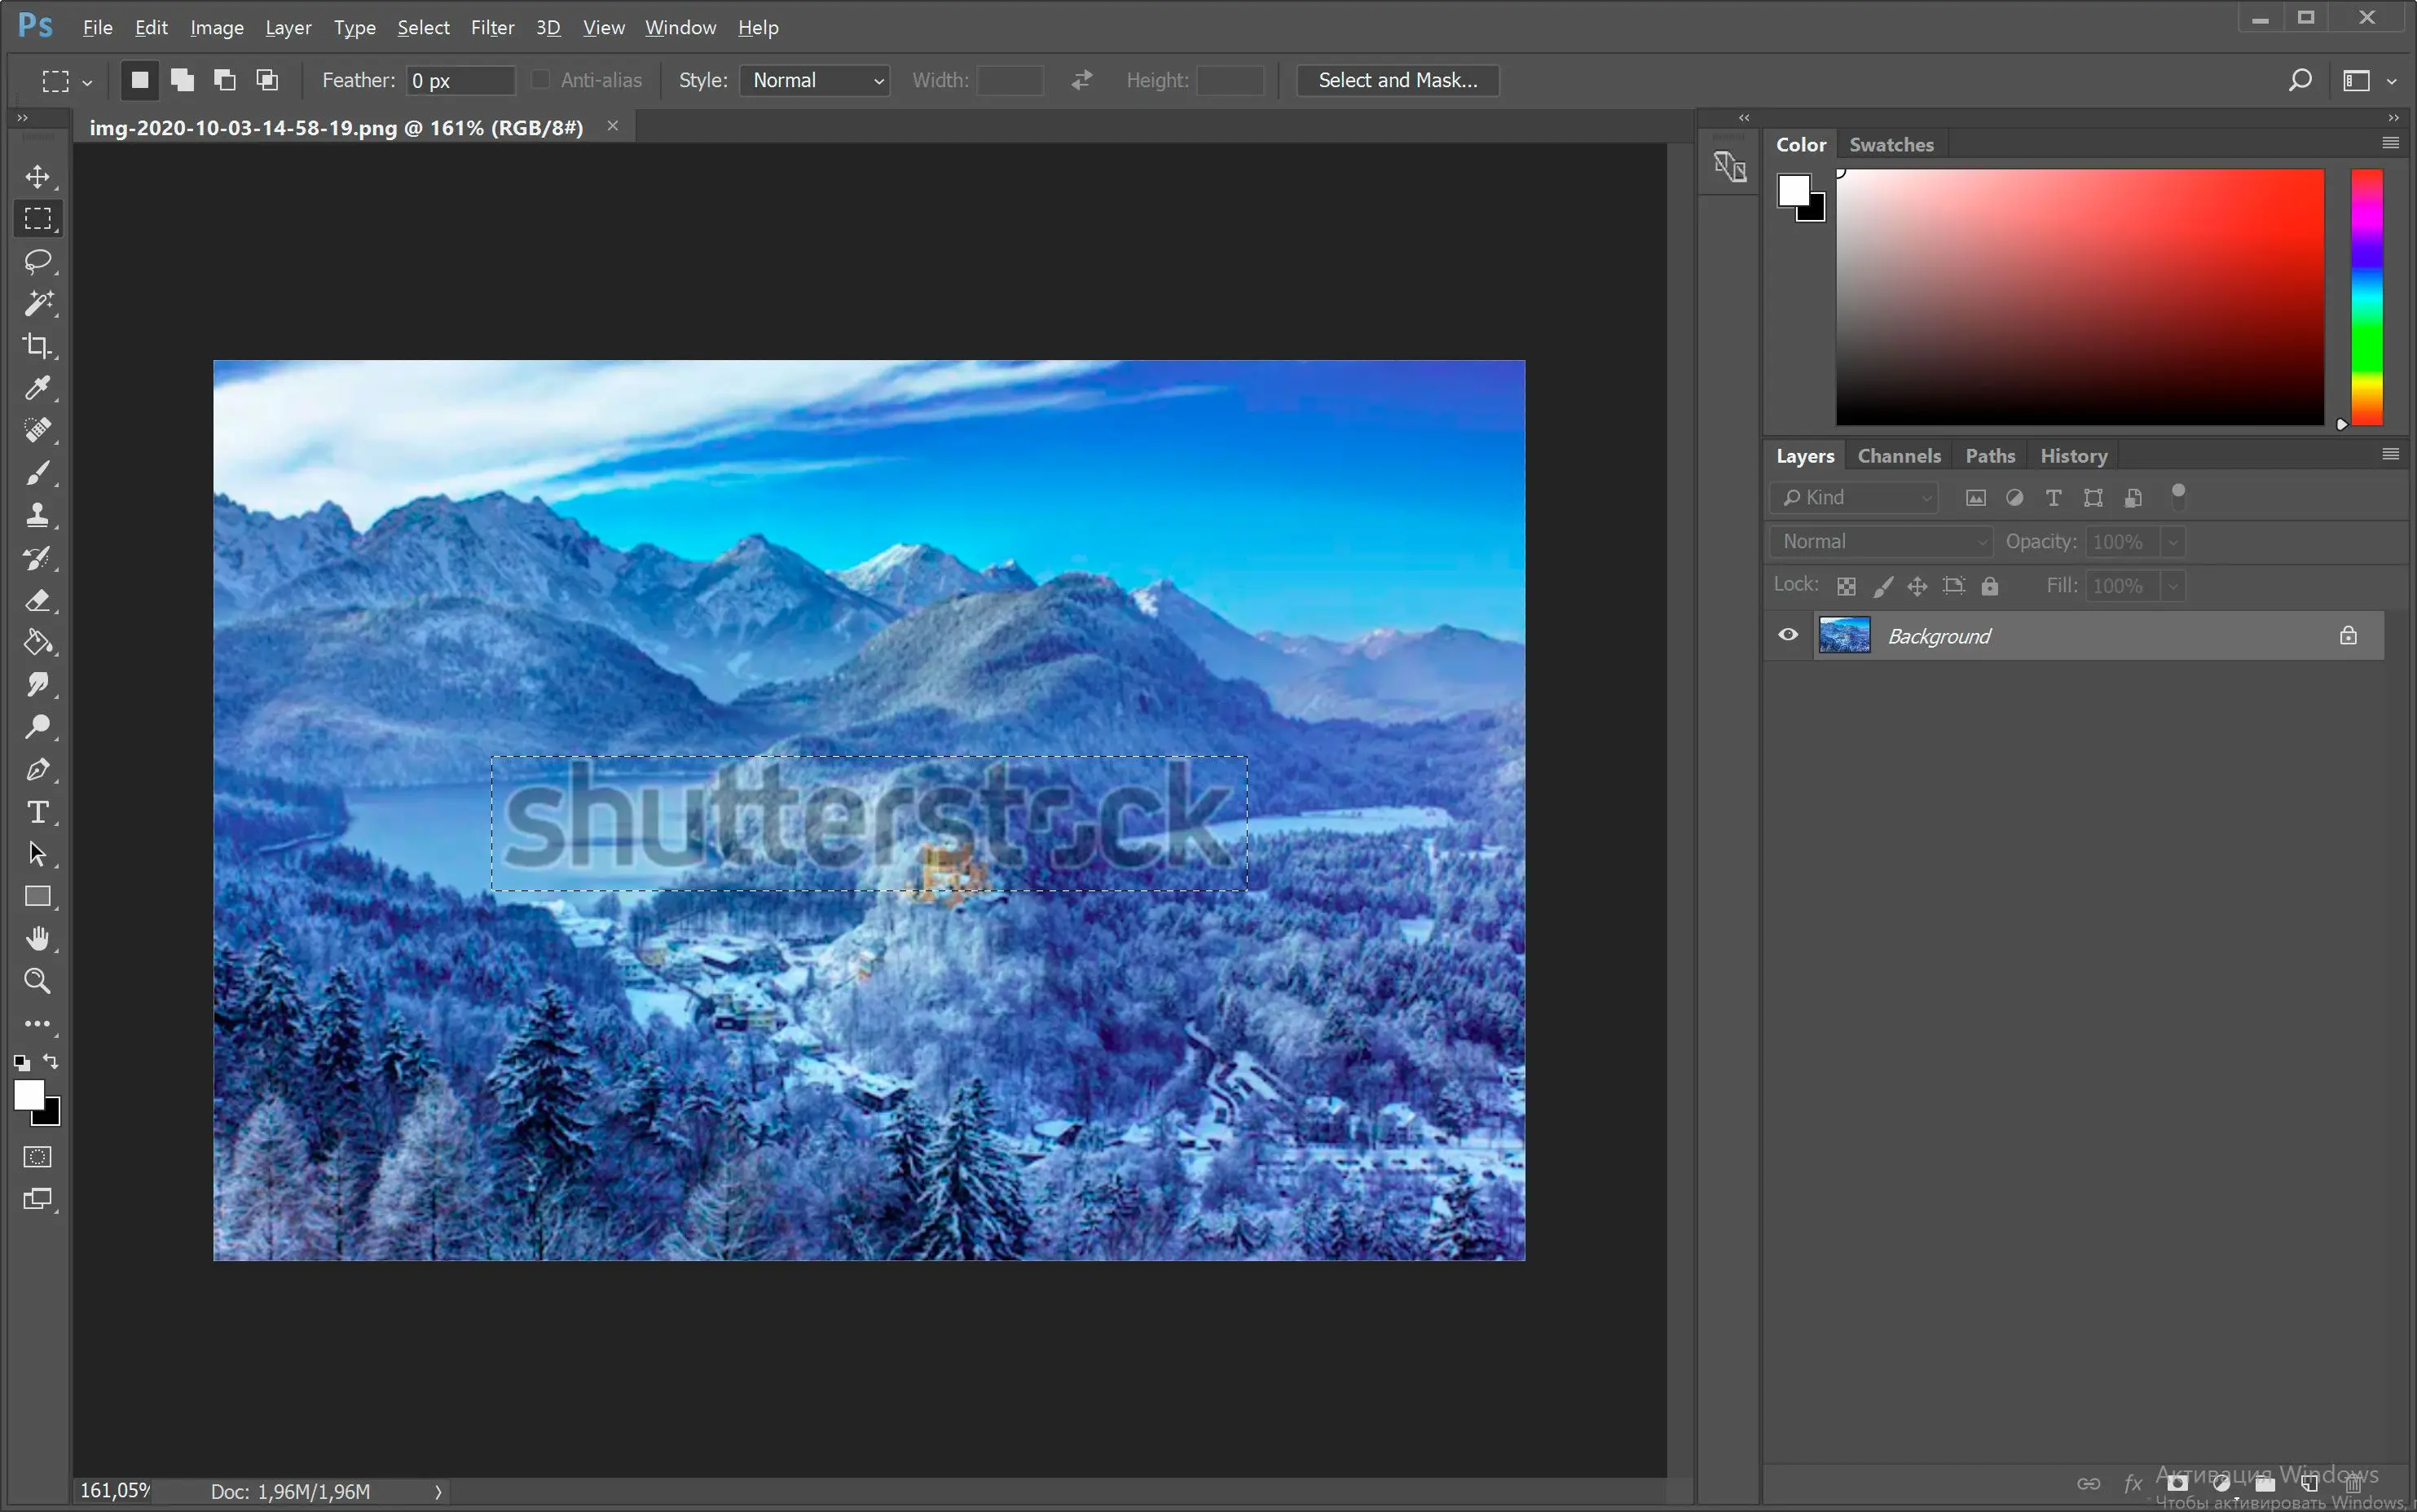 Mở ảnh có dấu nước Shutterstock trong Photoshop..